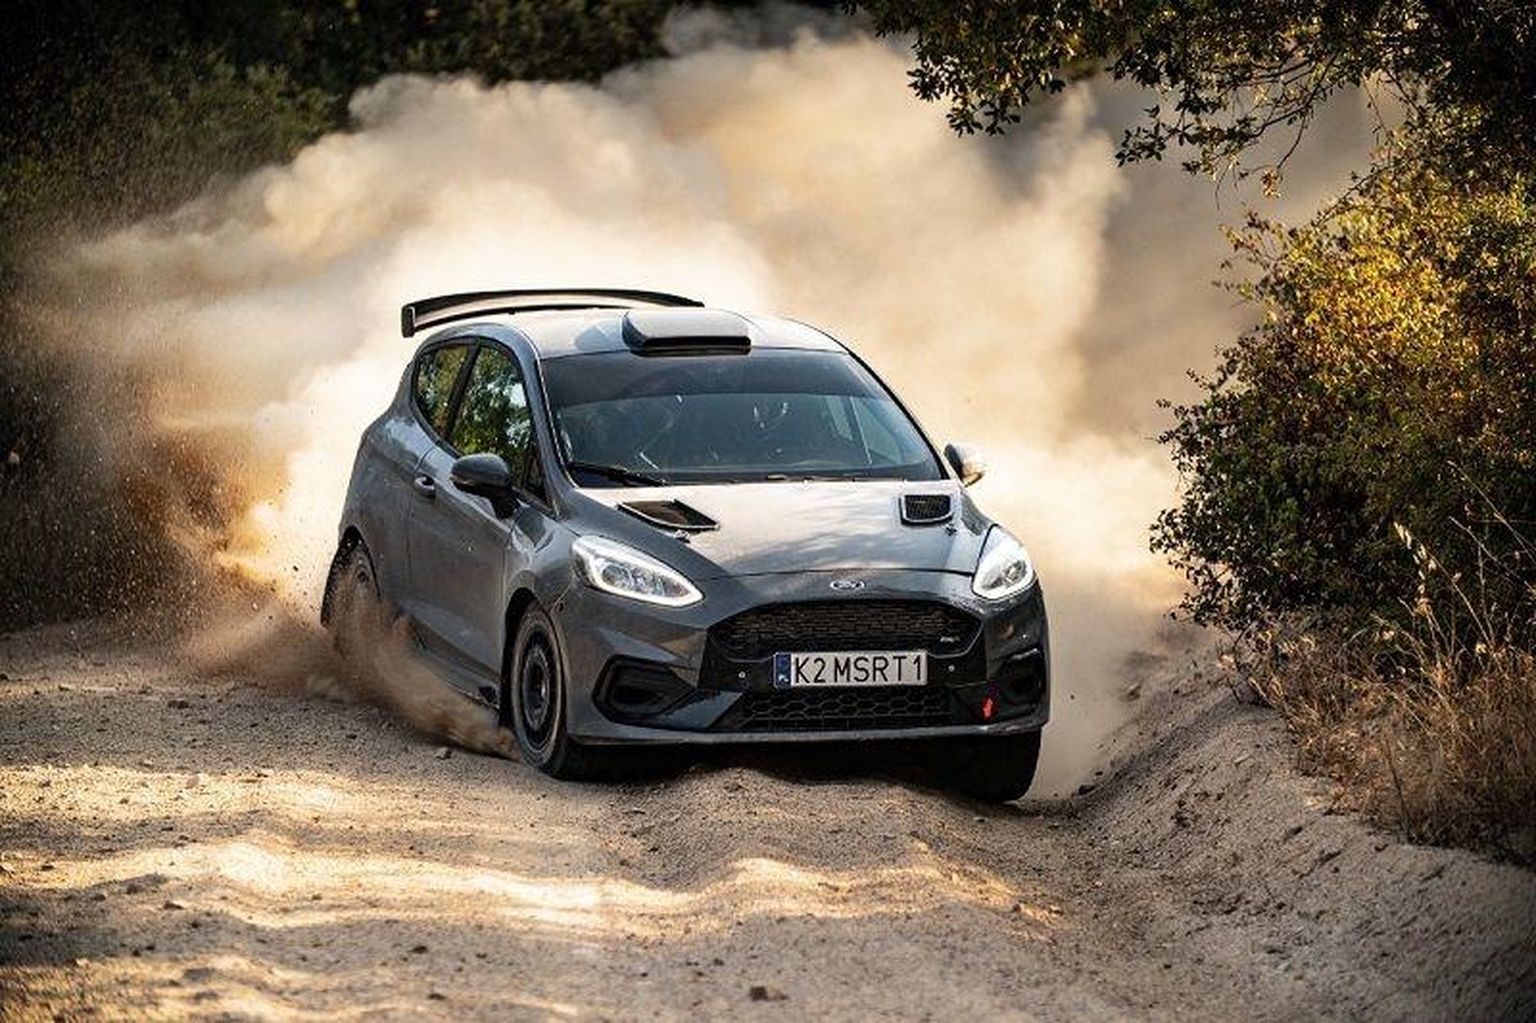 M-Spordi Ford Fiesta Rally3-autot näeb esimest korda võistlustules nädalavahetusel, kui sellega võtab Soome meistrivõistluste etapist osa Eesti rallipaar Ken Torn – Timo Taniel.